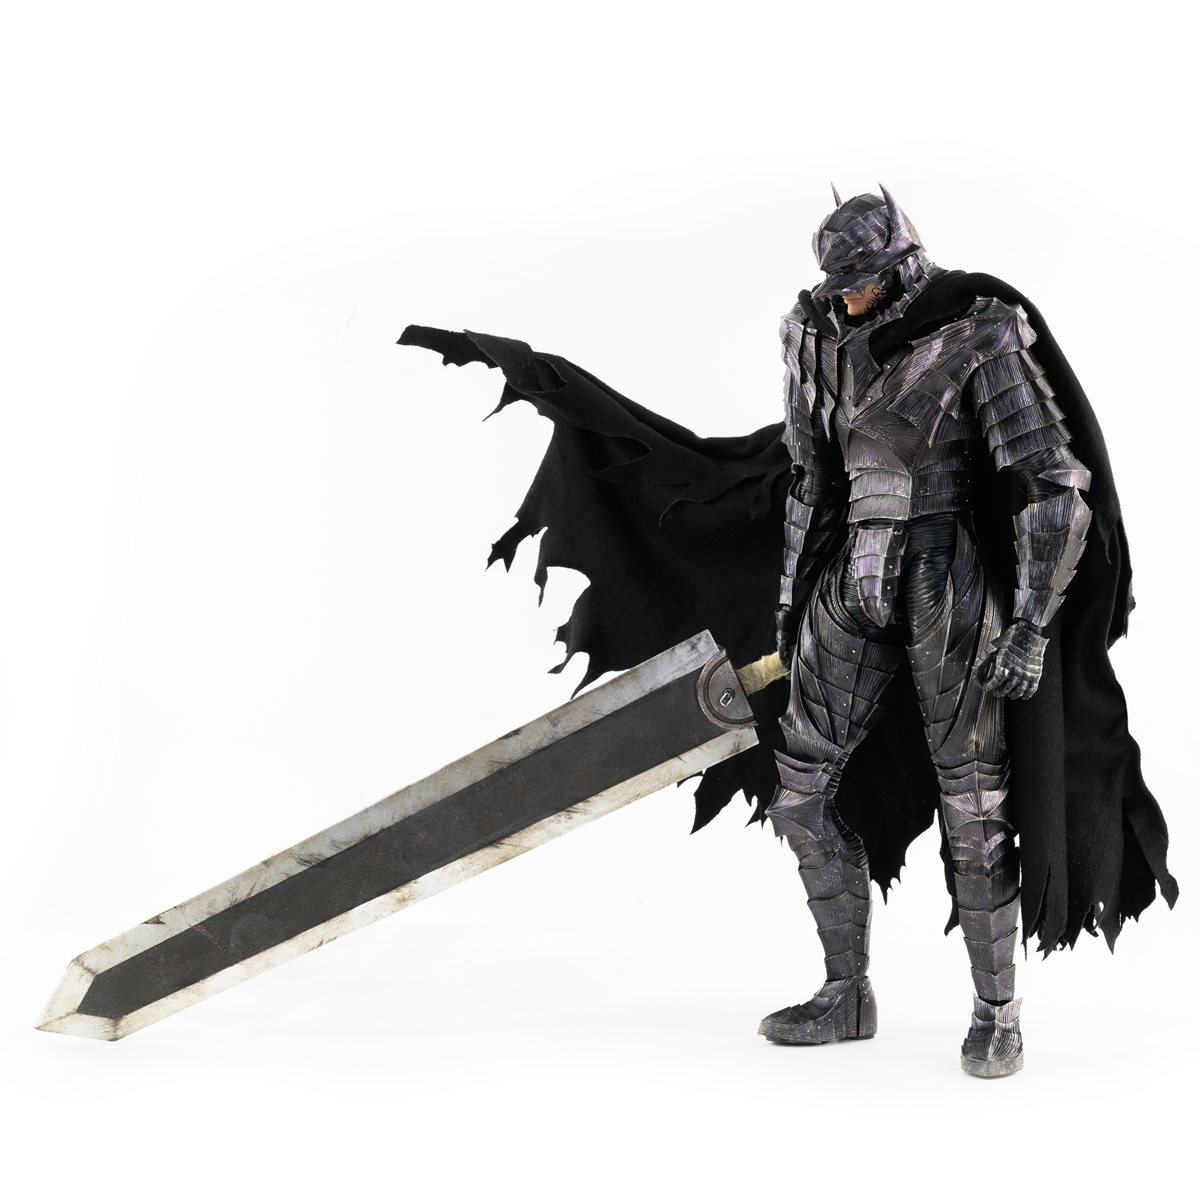 berserk armor action figure